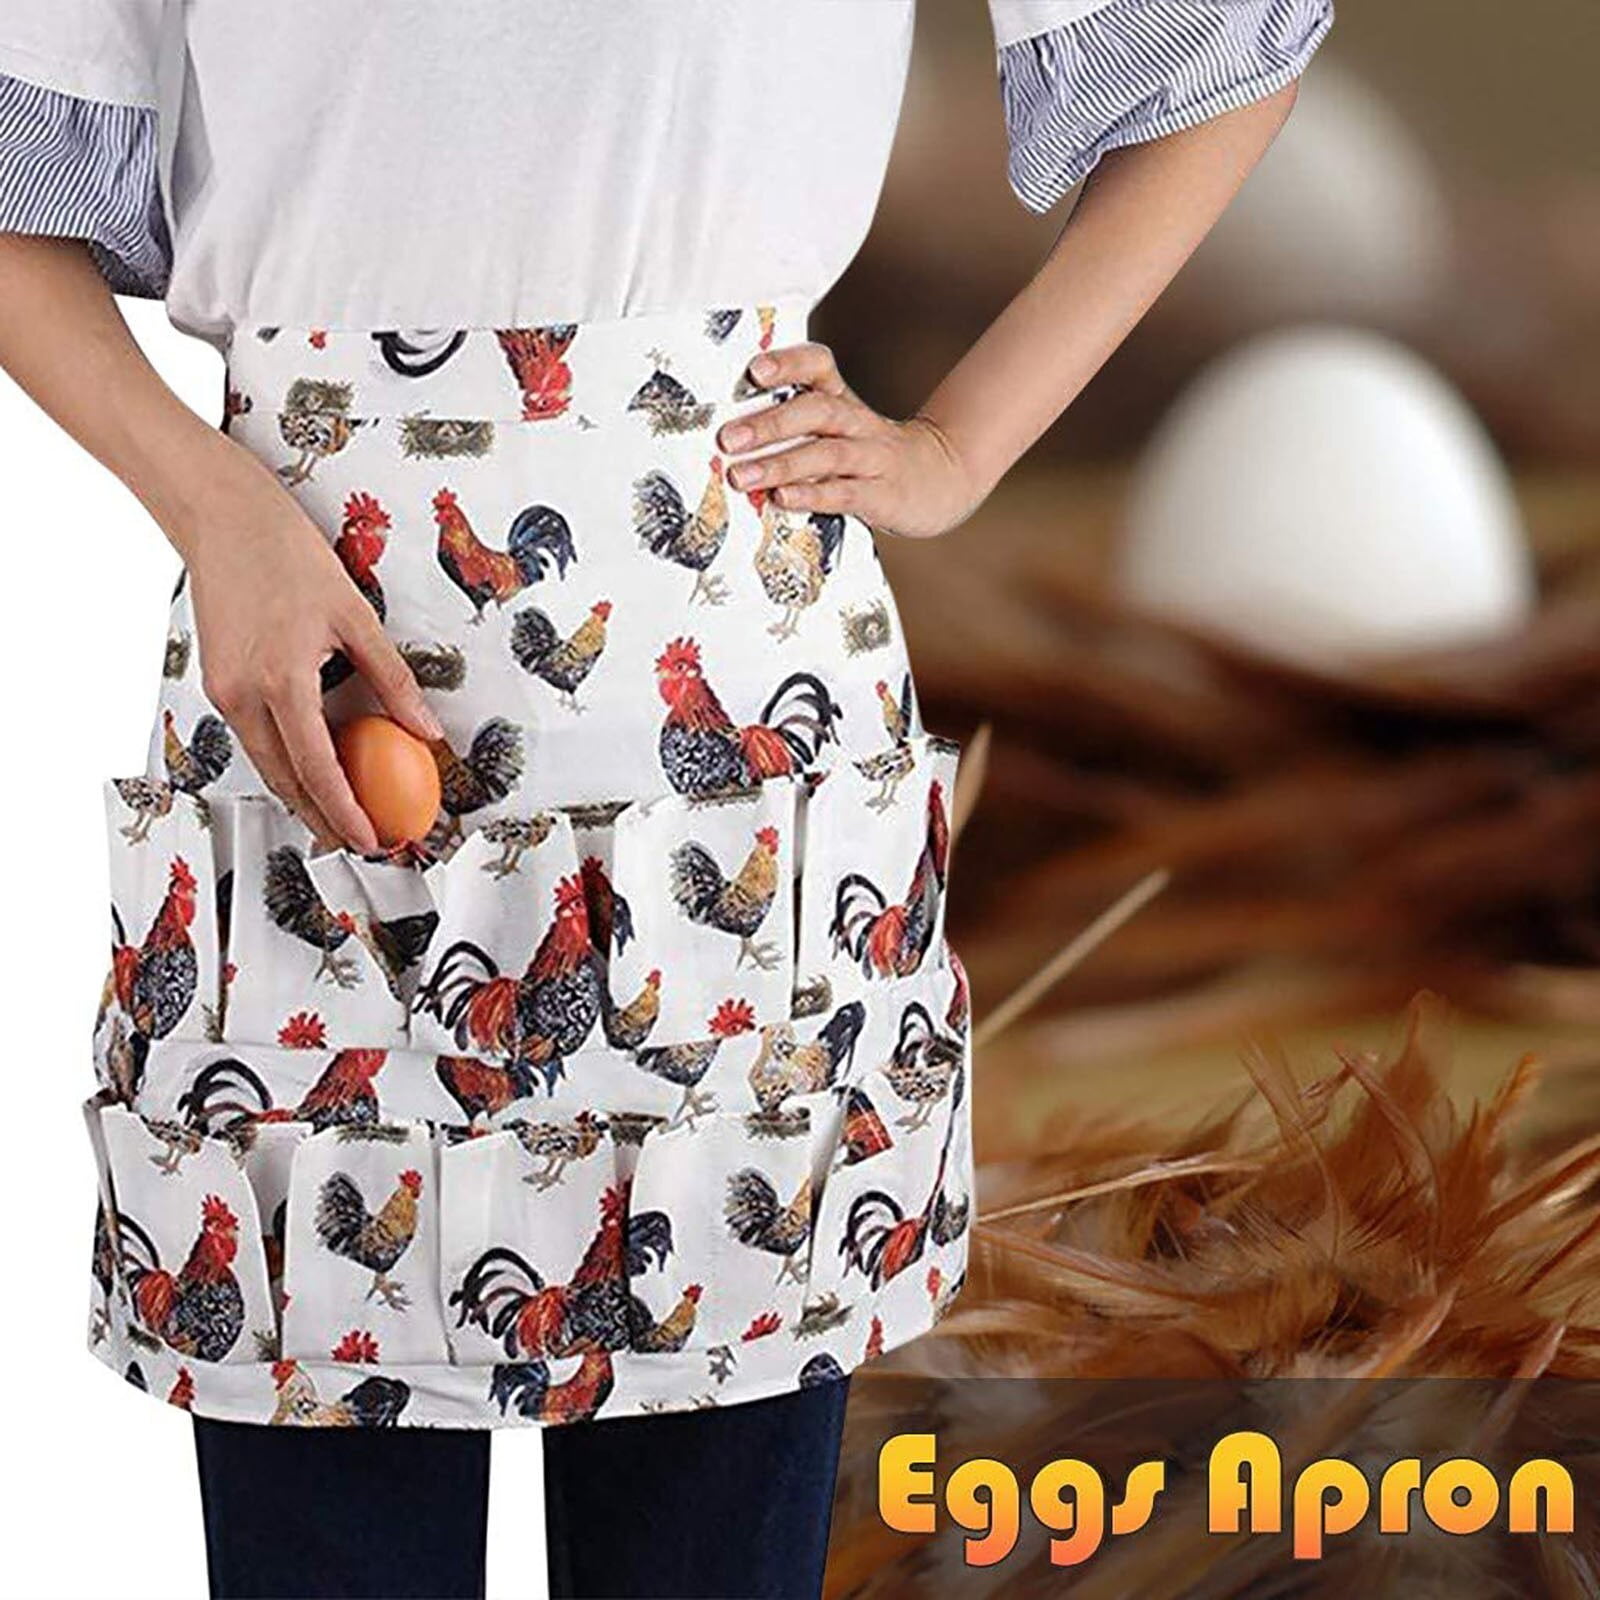 SHOWERORO Egg Picking Skirt Bib for Adults Childrens Apron Womens Bibs  Chicken Eggs Apron Duck Egg Apron Egg